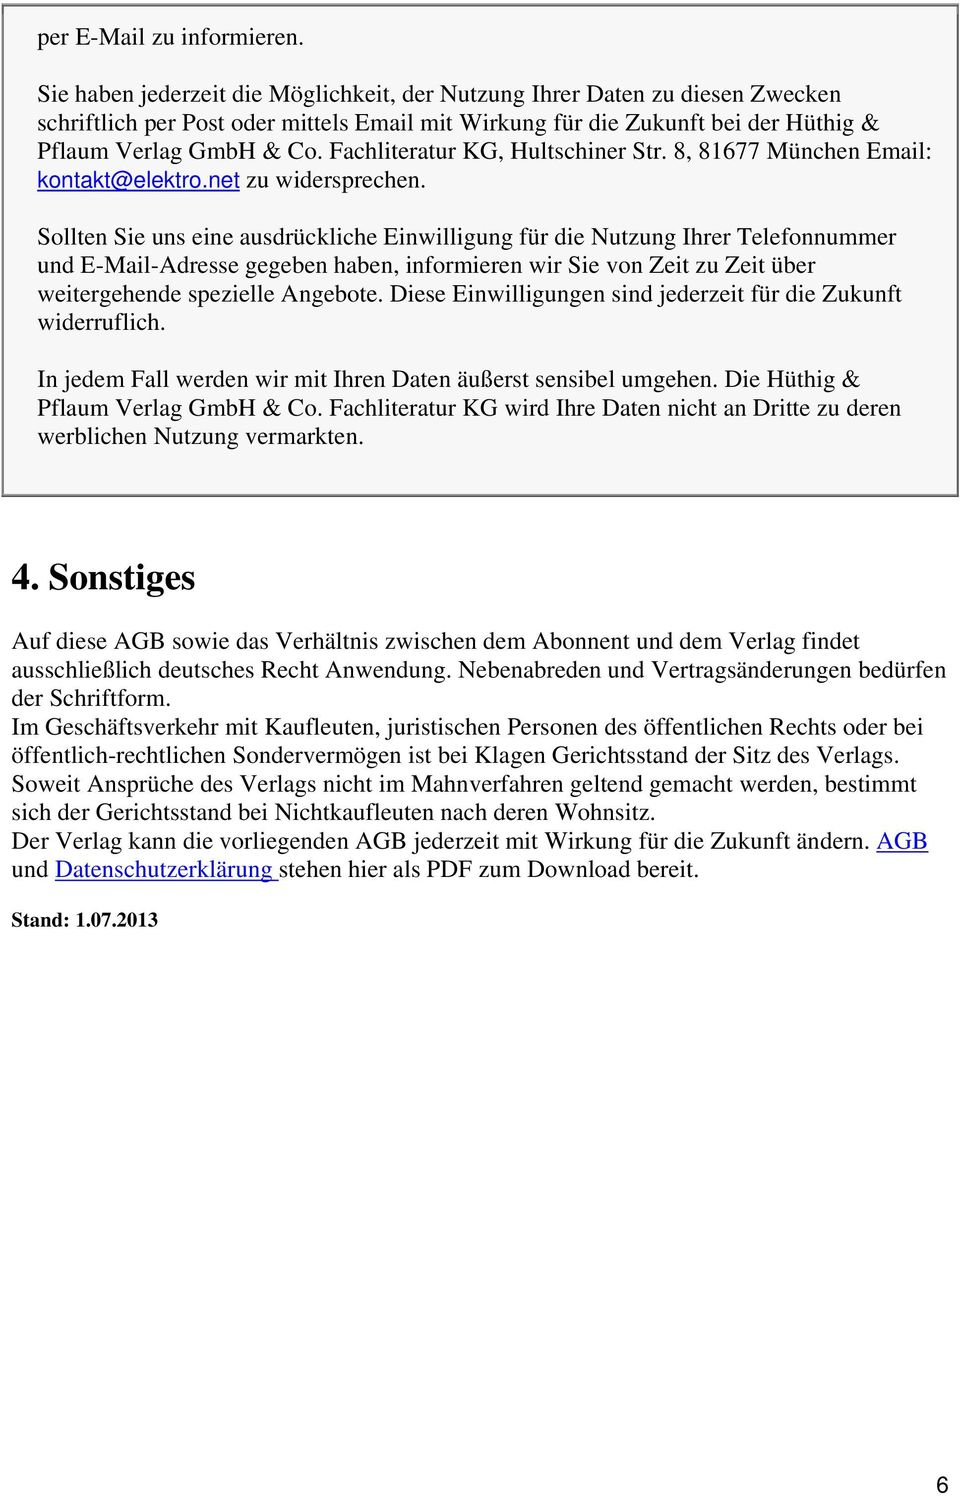 Fachliteratur KG, Hultschiner Str. 8, 81677 München Email: kontakt@elektro.net zu widersprechen.